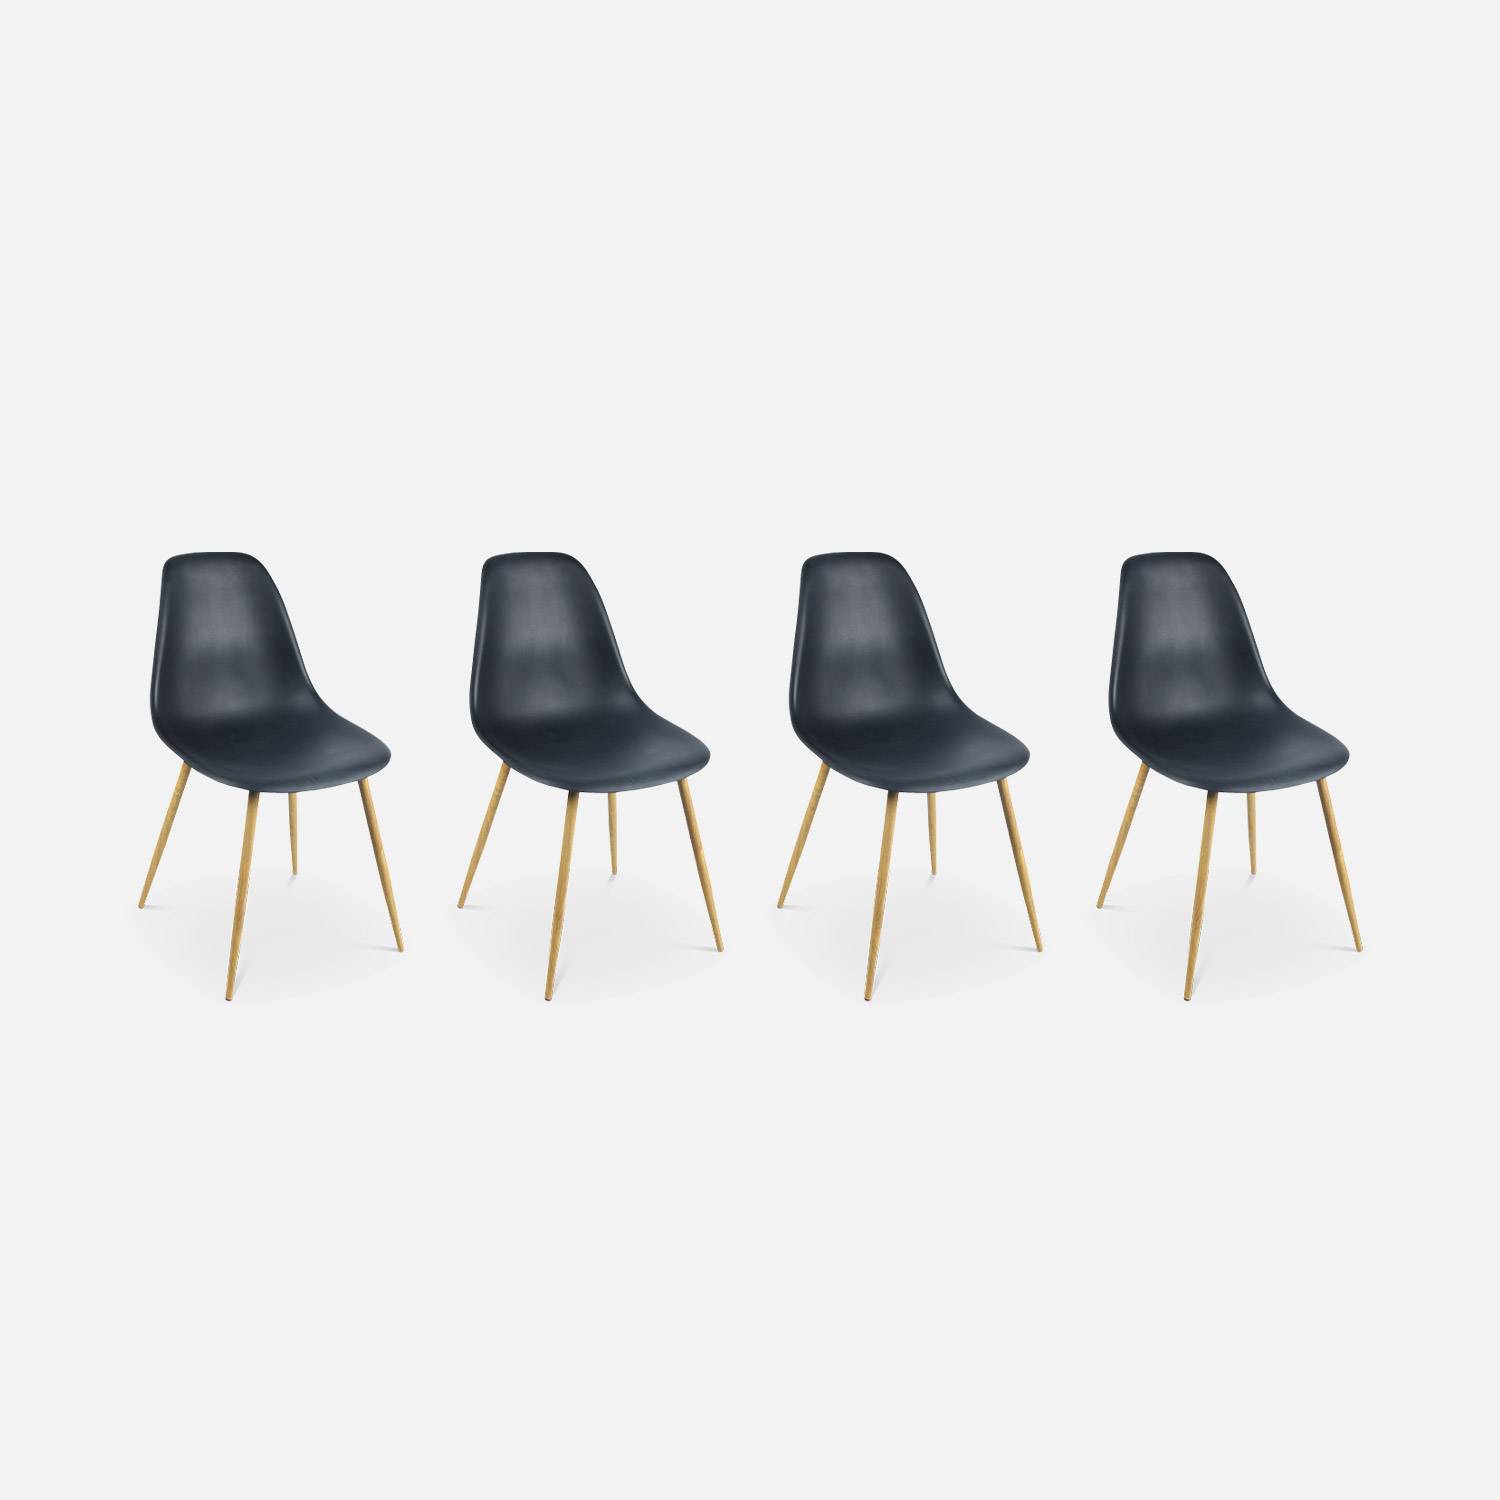 Rechthoekige eettafel zwart metaal 150cm + 4 eetkamerstoelen stoelen, houtkleurige metalen poten, zwarte zitting,sweeek,Photo4